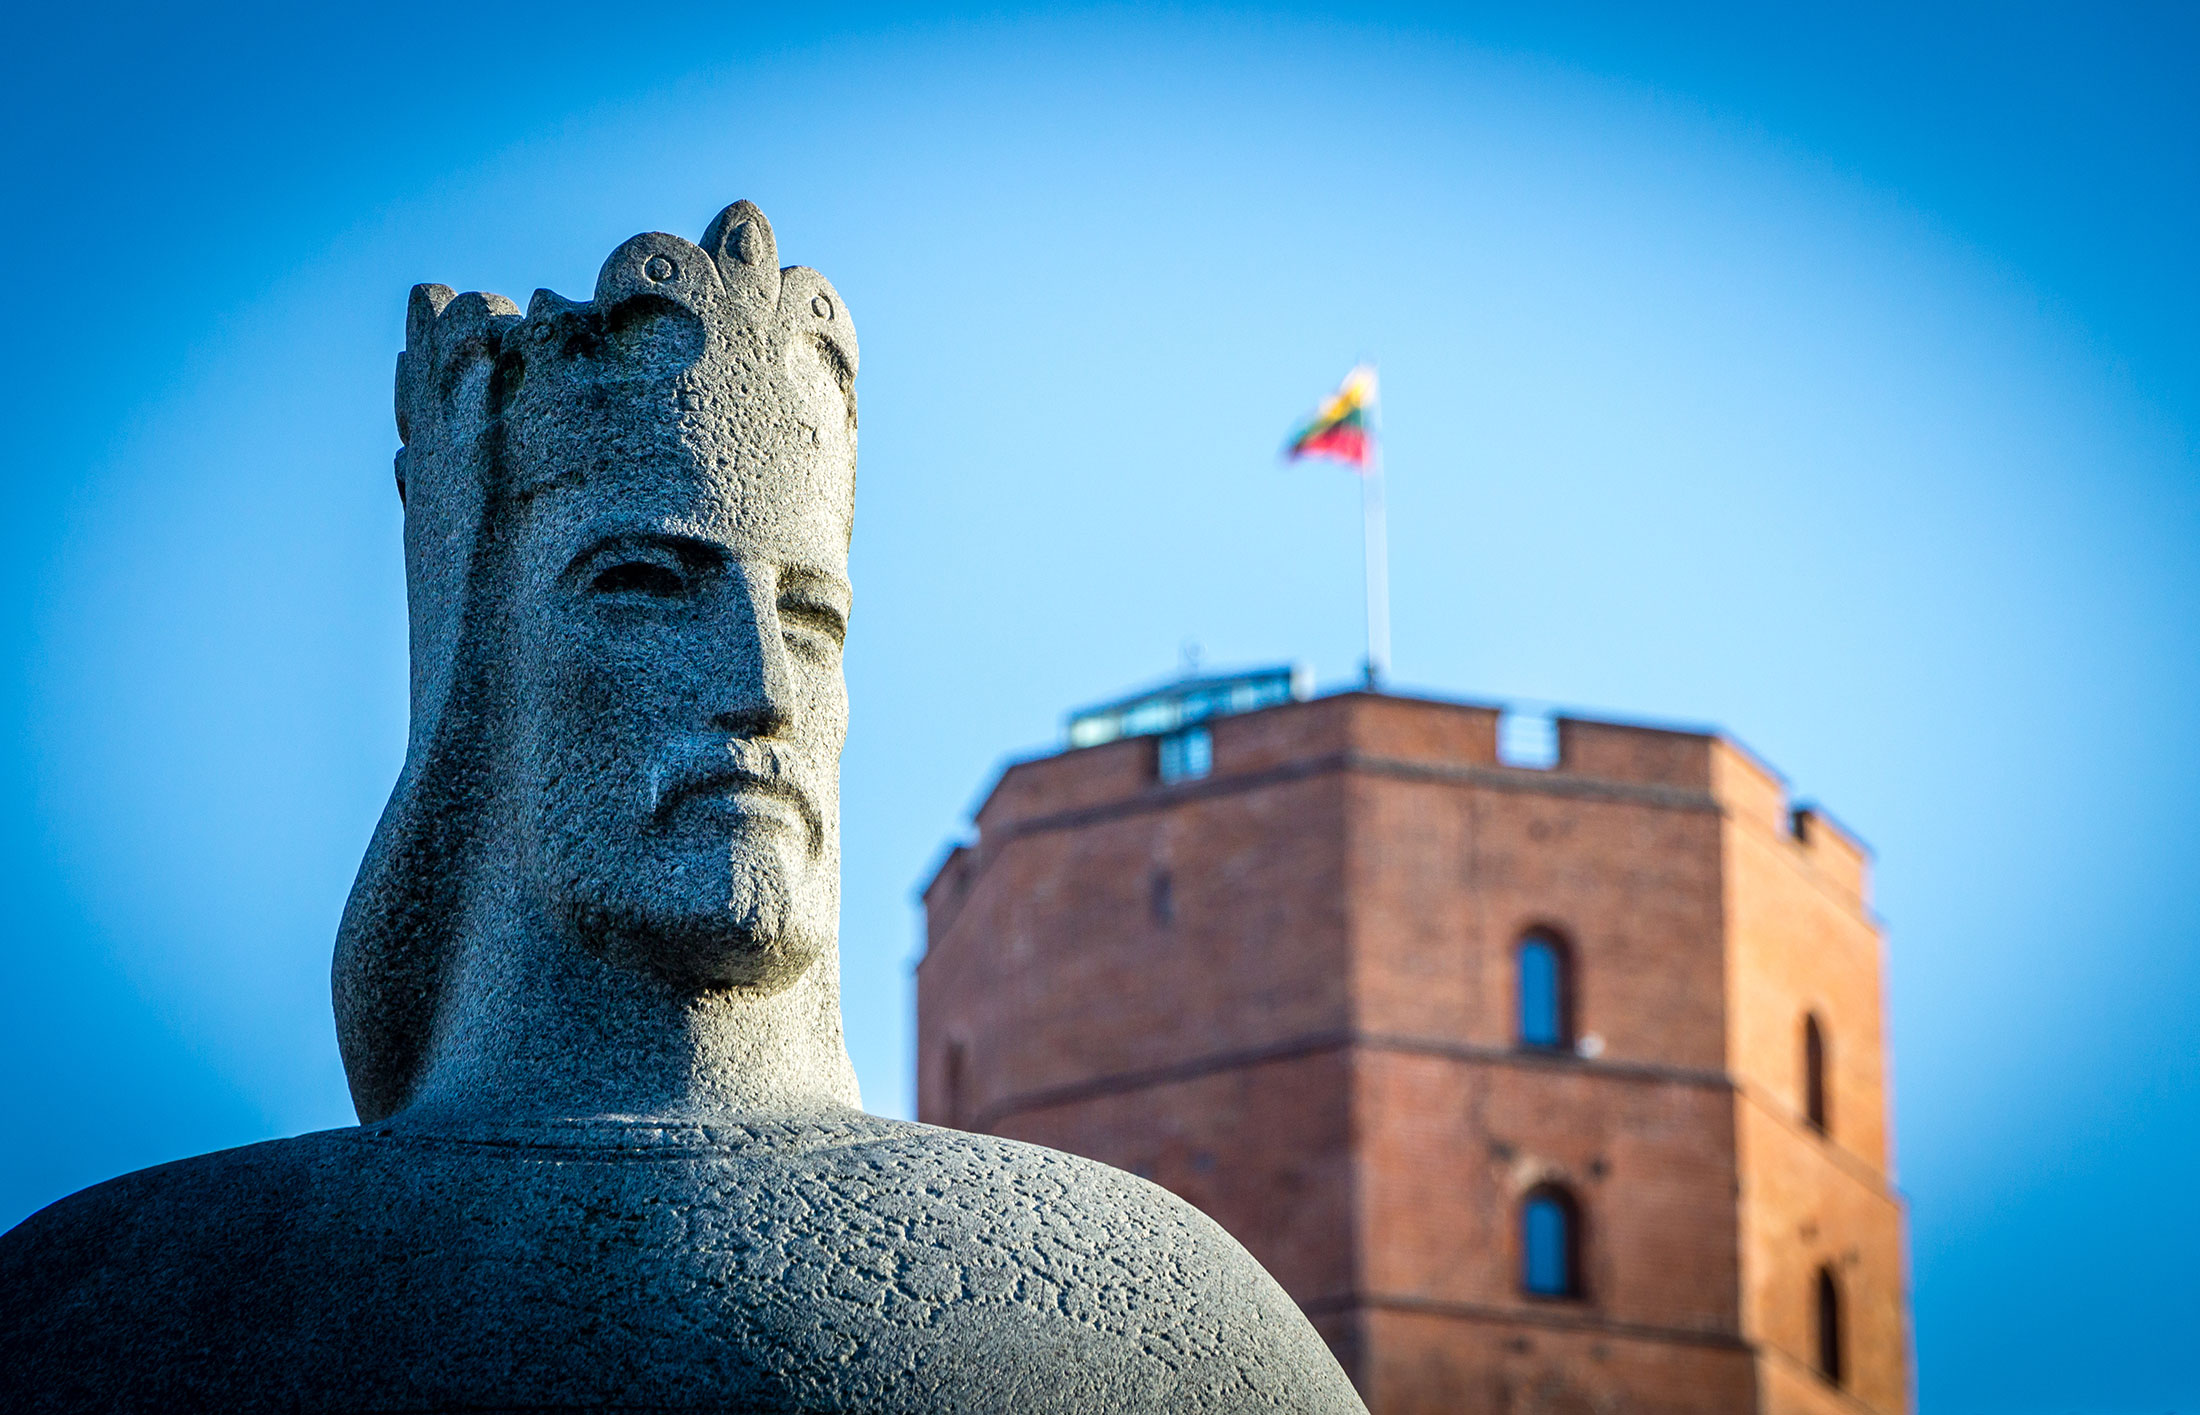 Mindaugas-statyn nära slottet Gediminas, Litauen.